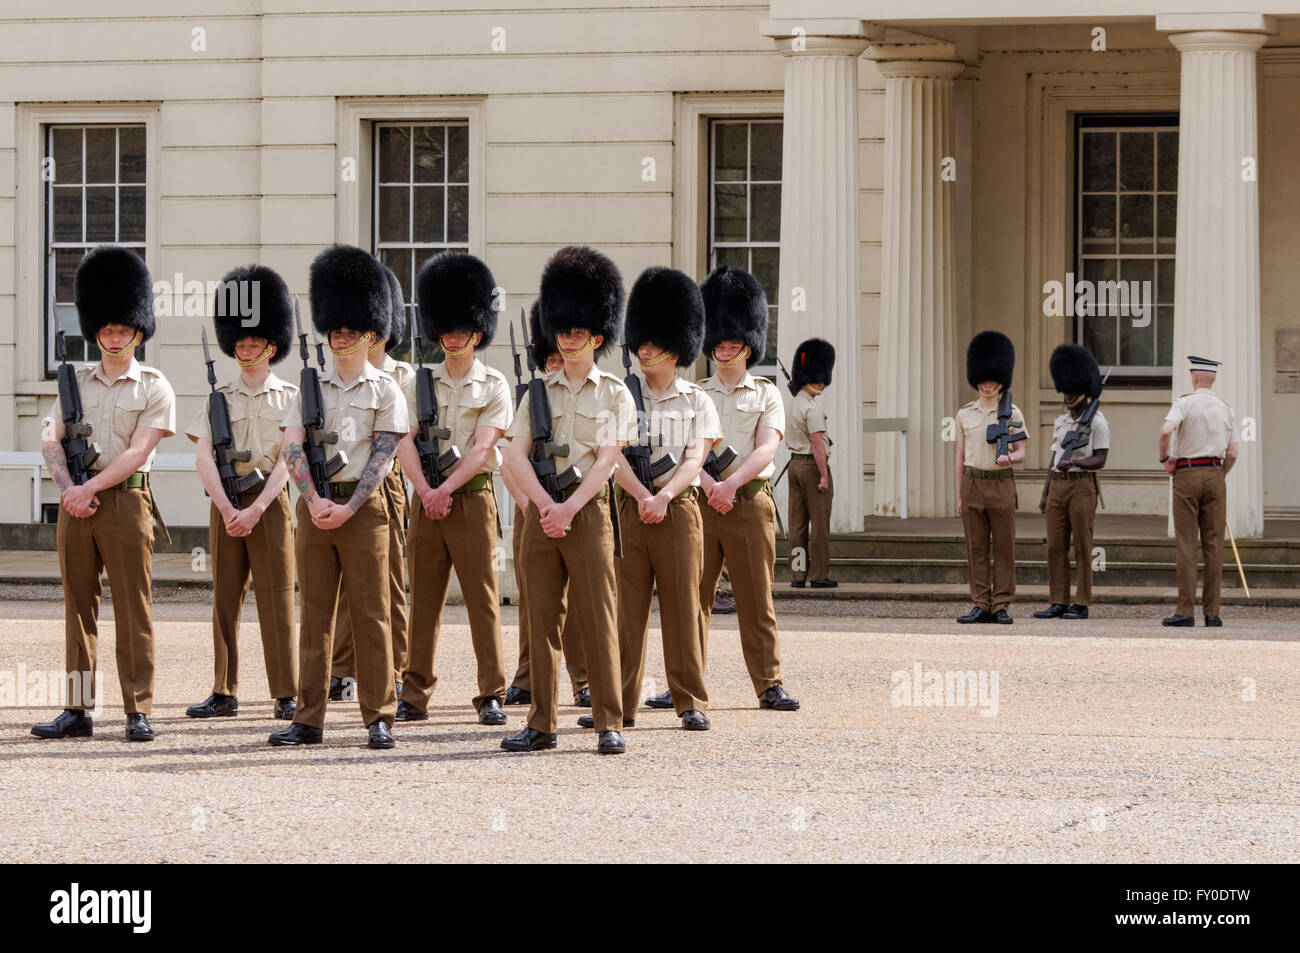 Los guardias ensayar delante de los guardias del museo en forma de jaula, caminar, Londres England Reino Unido Foto de stock